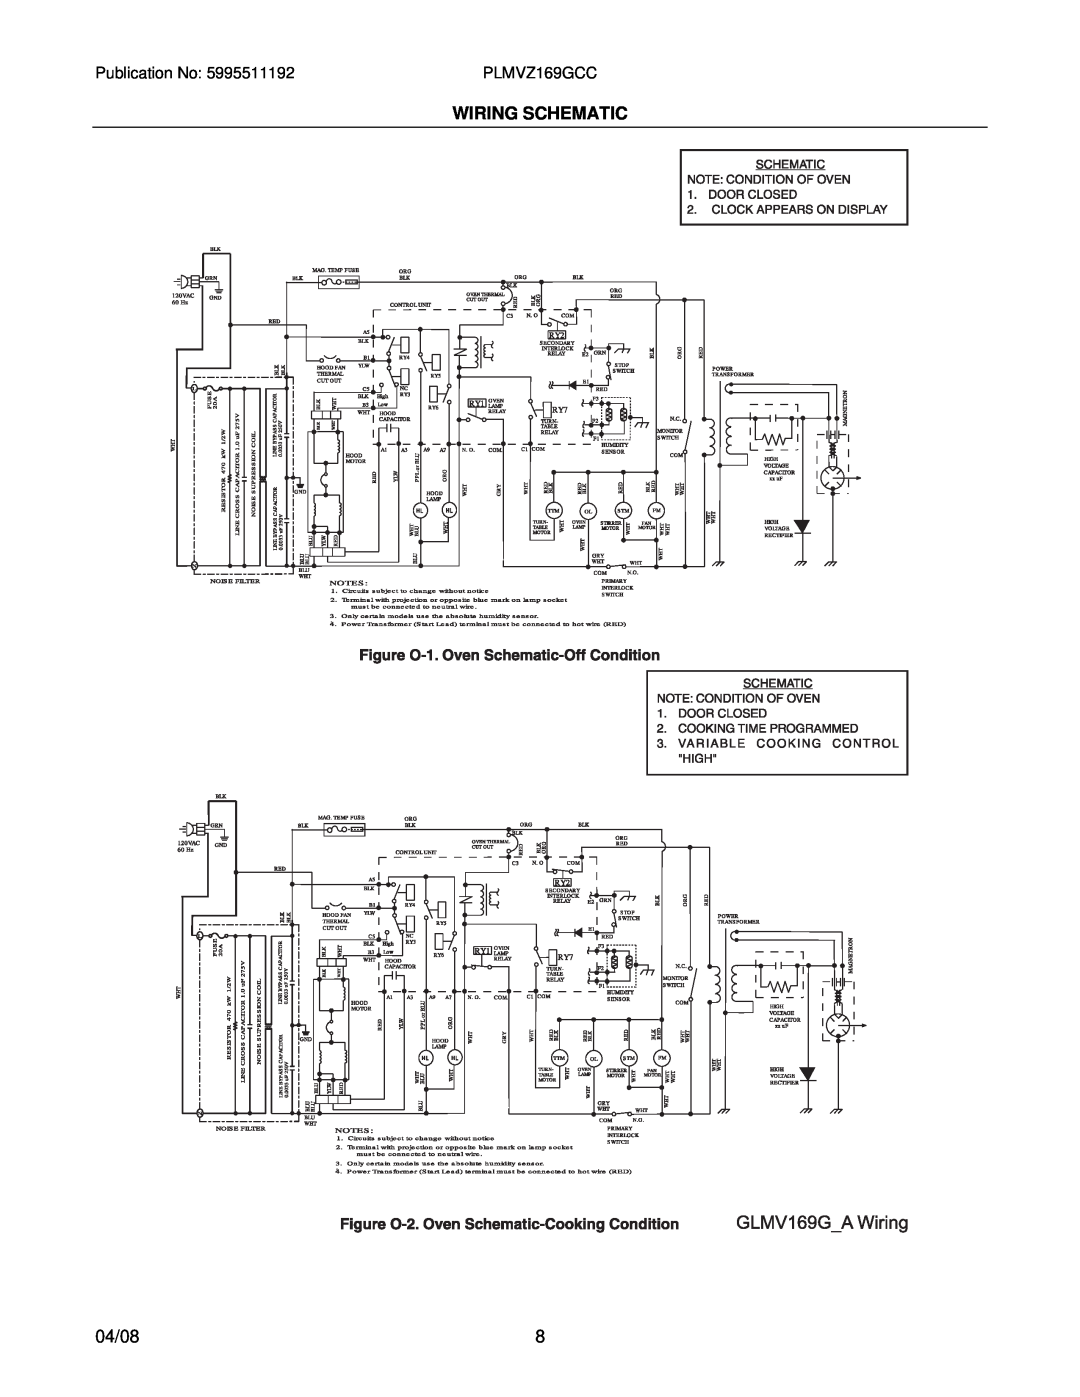 Electrolux PLMVZ169G installation instructions Wiring Schematic, 04/08 